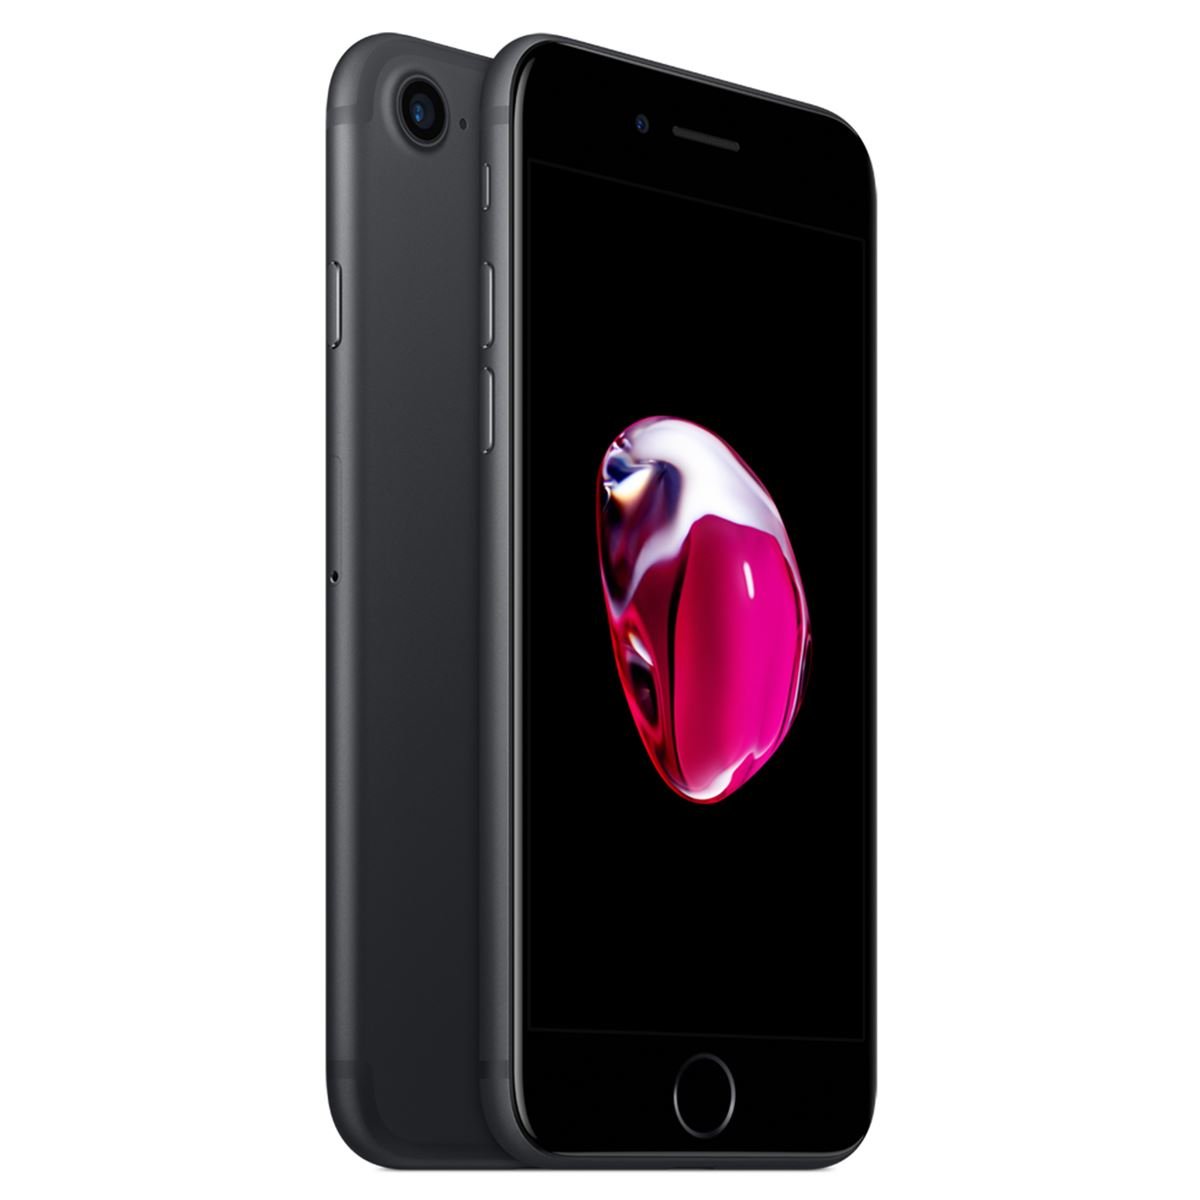 Celular iPhone 7 32Gb Color Negro R9 (Telcel)